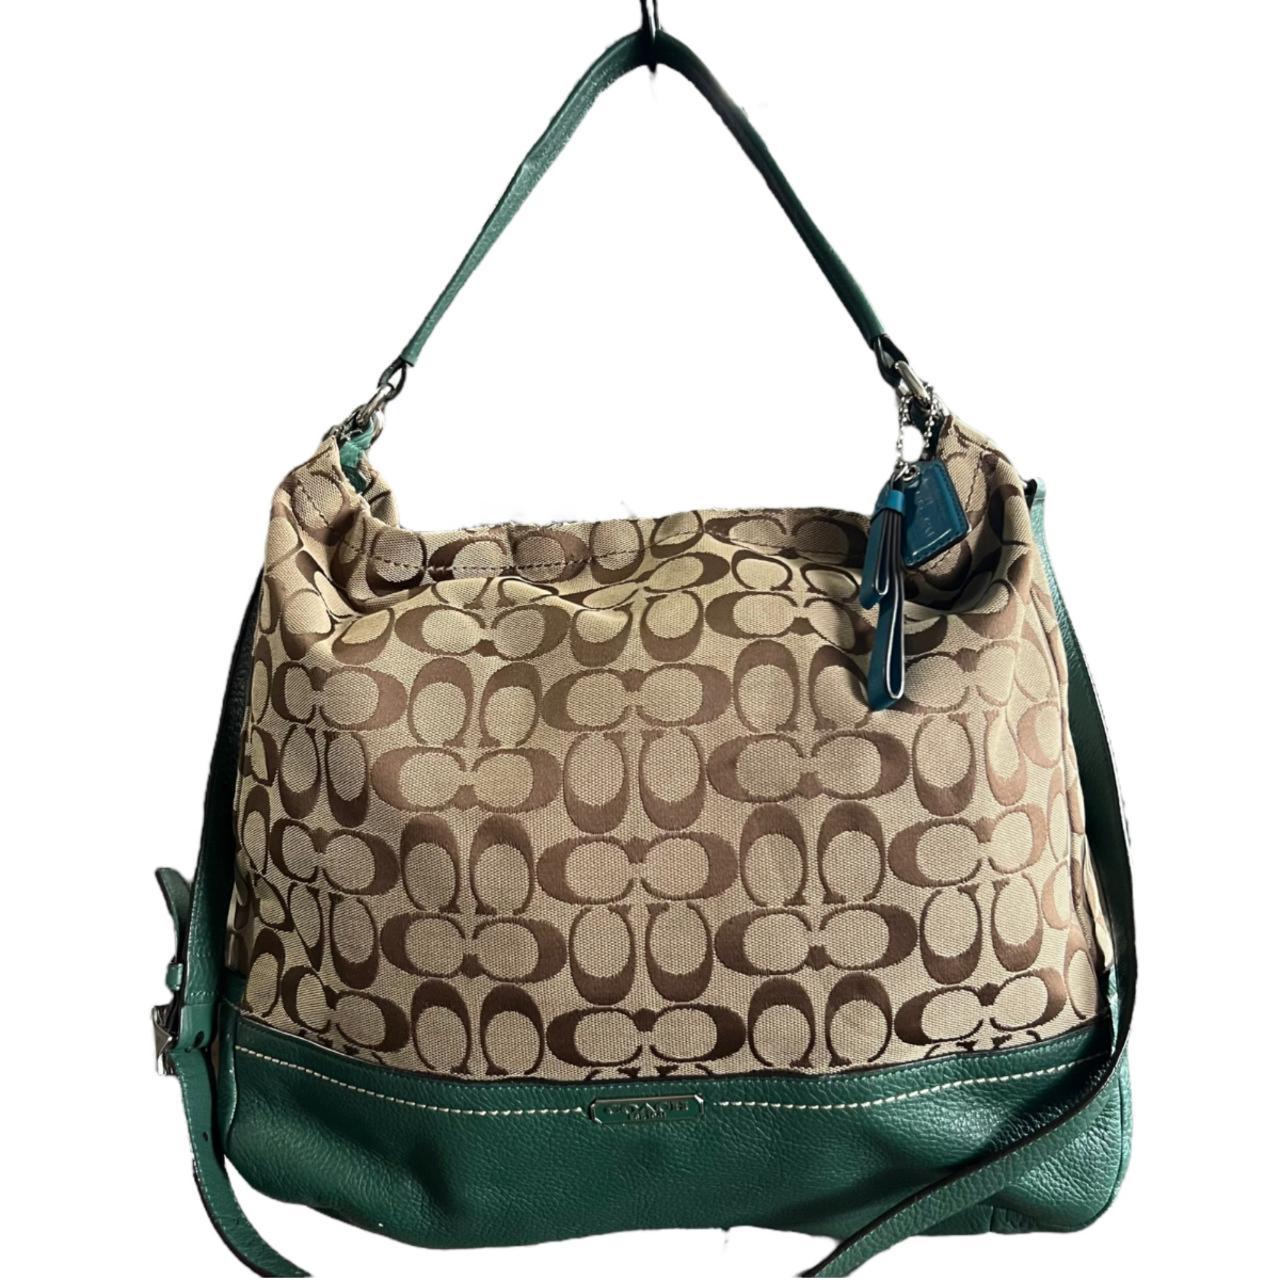 Cute Hobo Tote Handbag Mini Clutch Purse with Zipper Closure | SHEIN USA